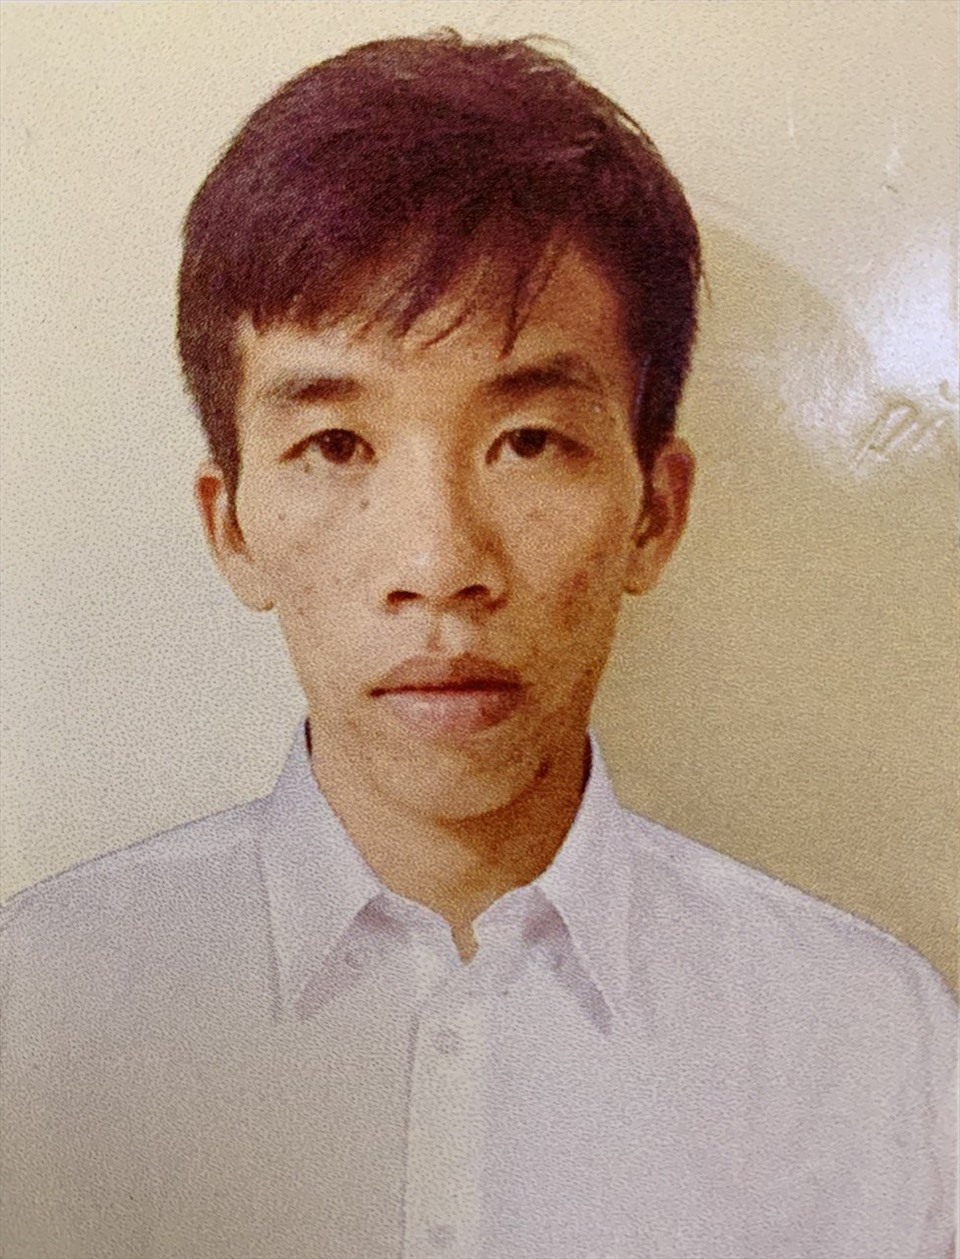 Bị can Nguyễn Công Hậu bị khởi tố về tội hiếp dâm người dưới 16 tuổi. Ảnh: Văn Vĩnh